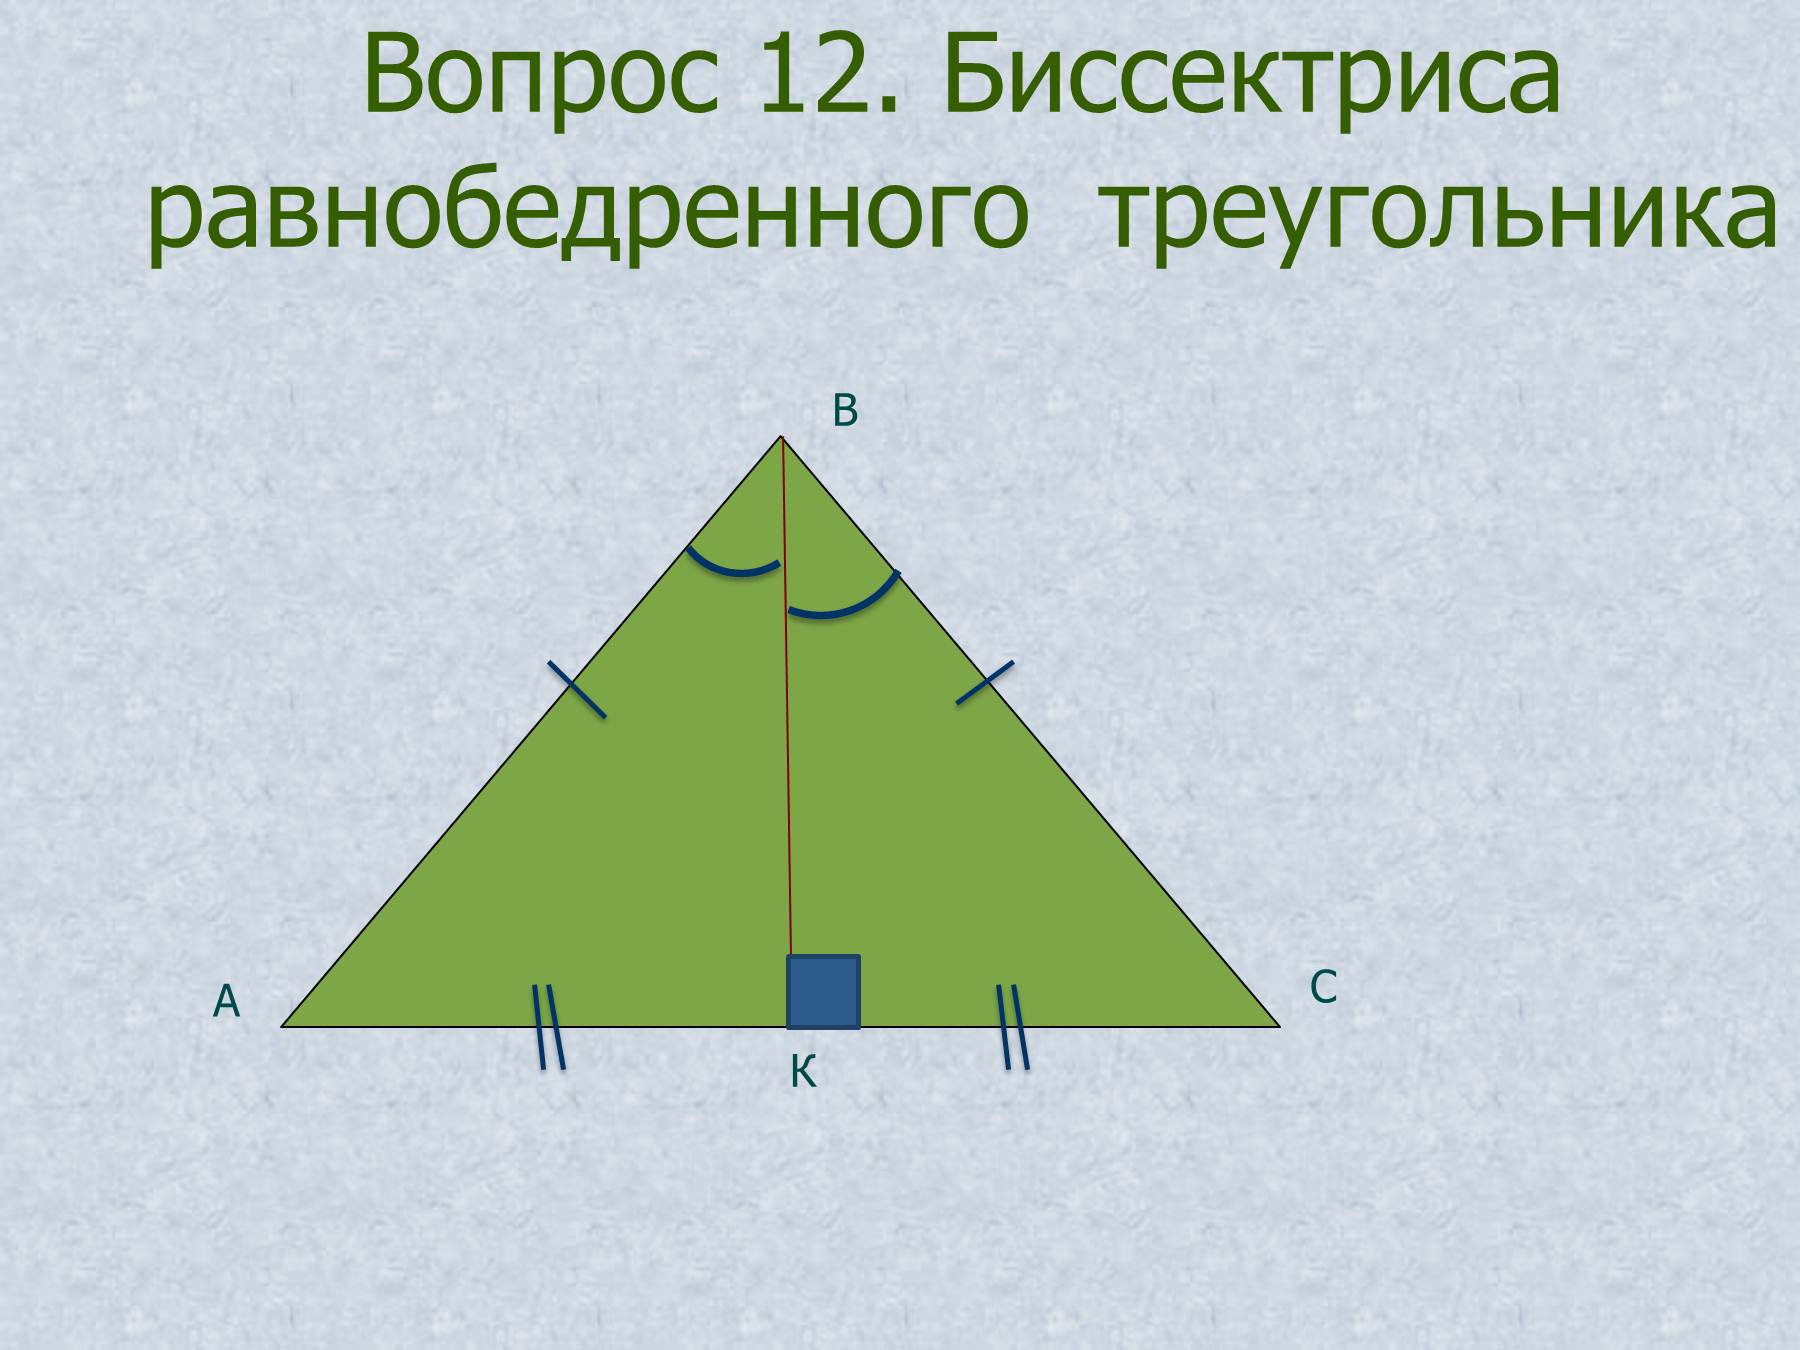 Каждый равносторонний треугольник является остроугольным